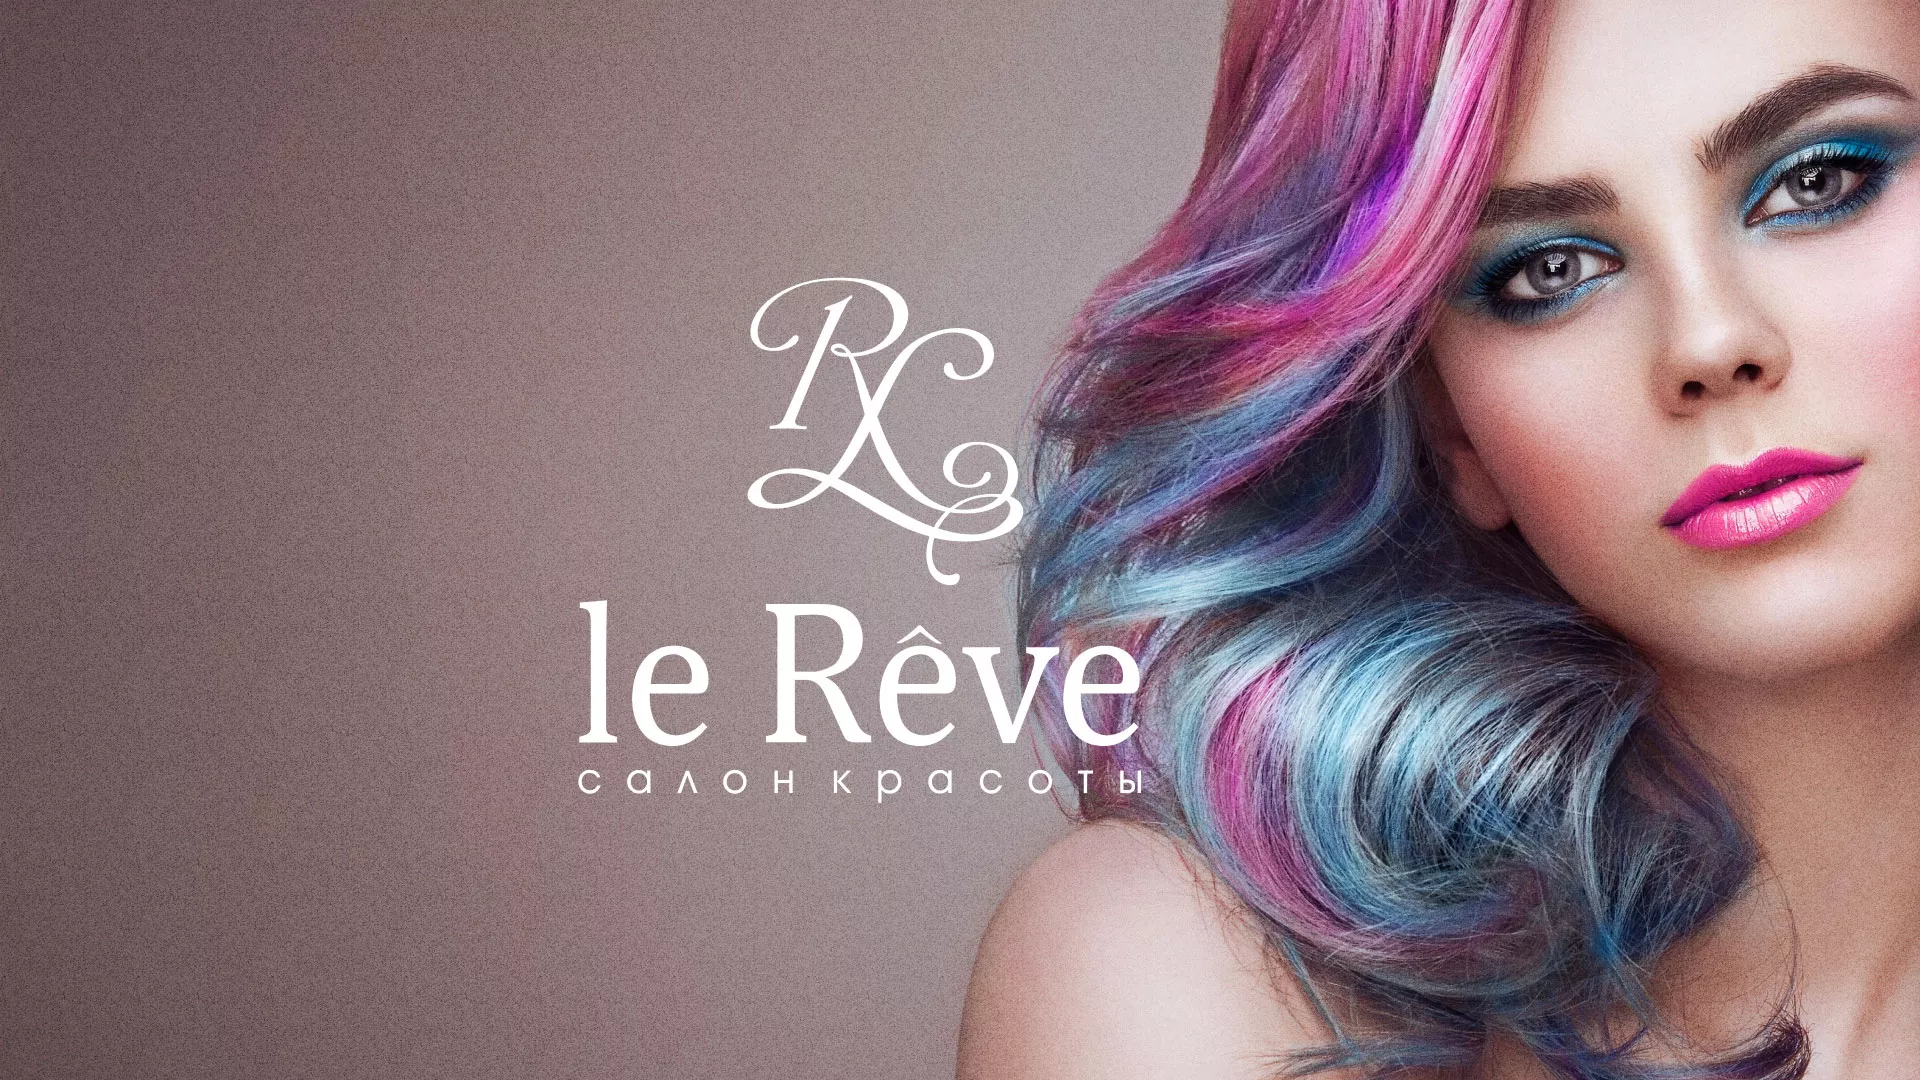 Создание сайта для салона красоты «Le Reve» в Верхнем Уфалее